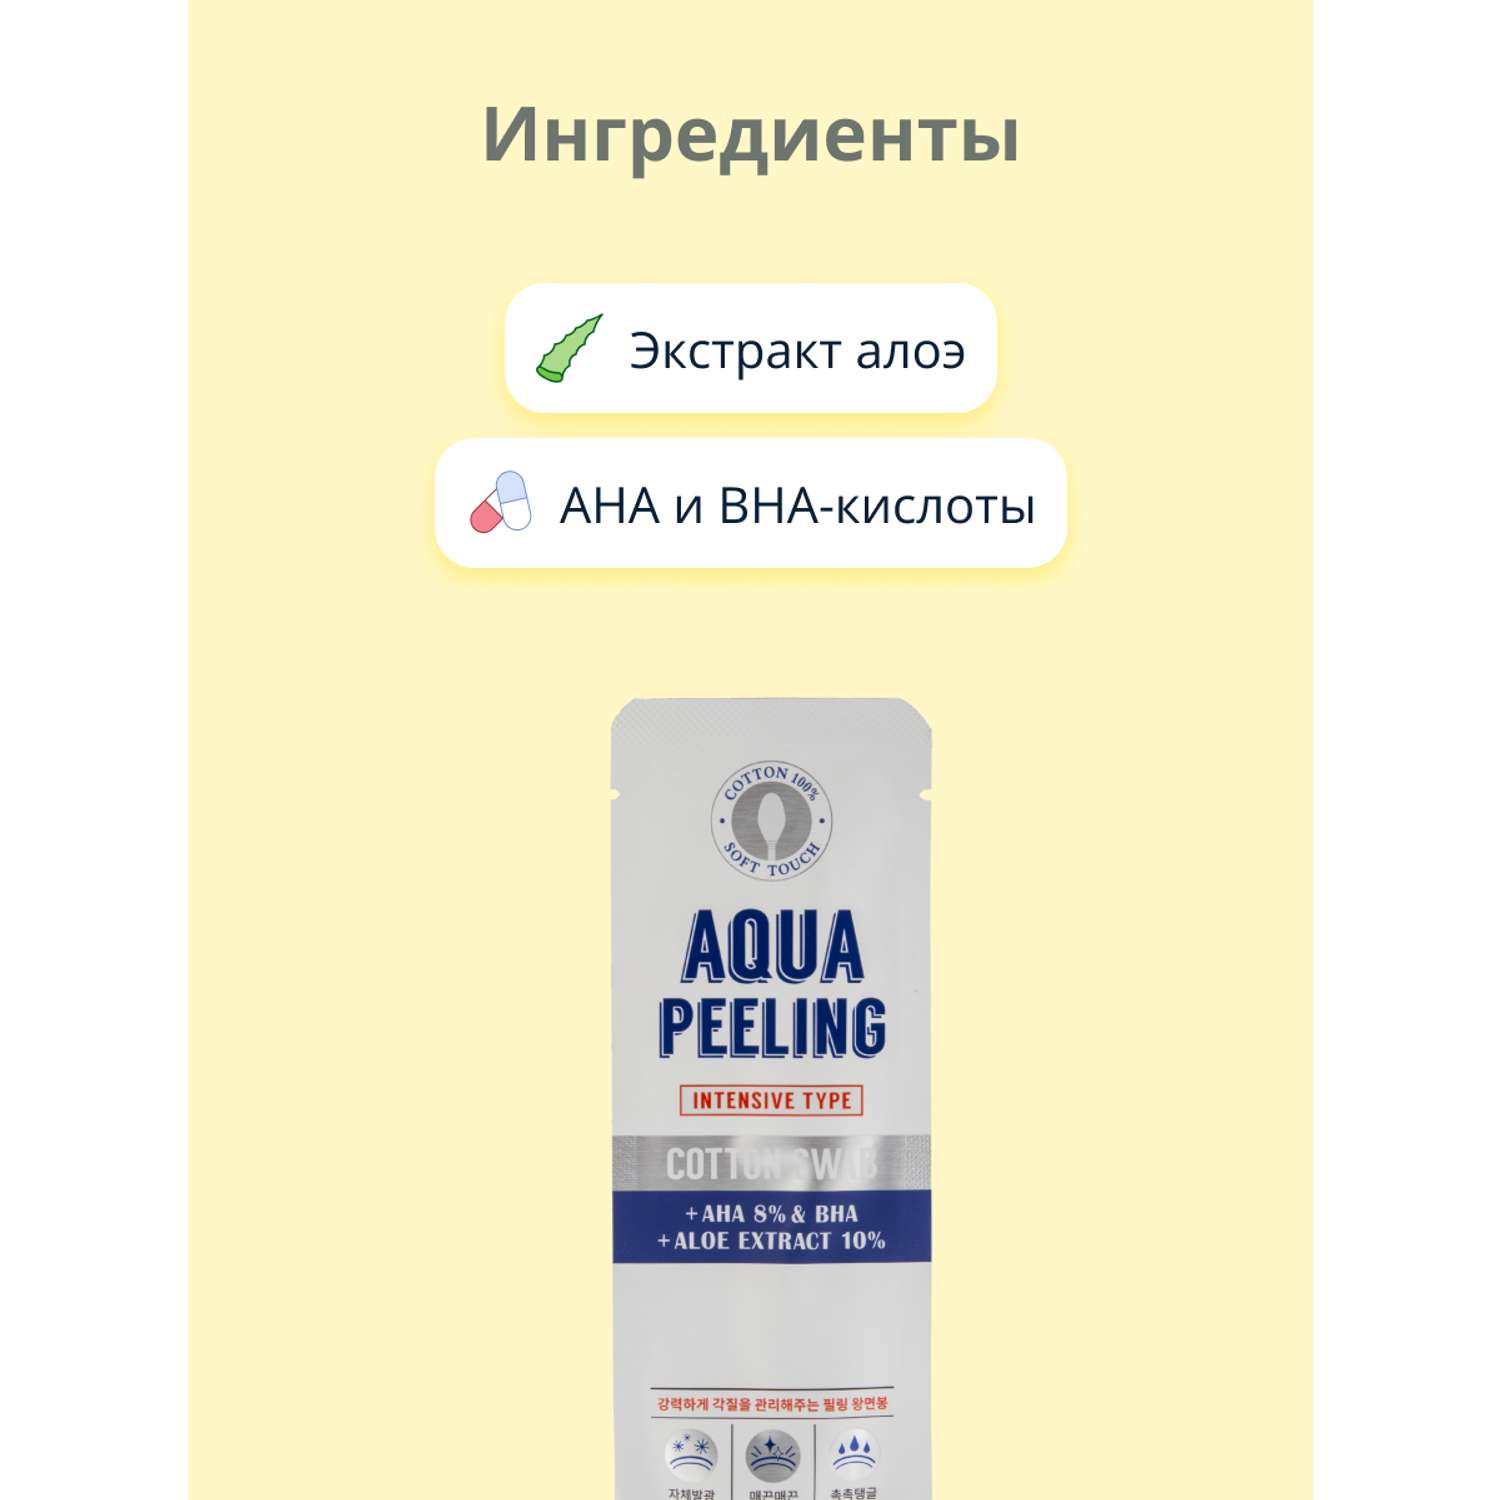 Ватная палочка для пилинга APieu Aqua peeling c 8% aha и bha-кислотами и экстрактом алоэ вера интенсивного действия 3 мл - фото 2